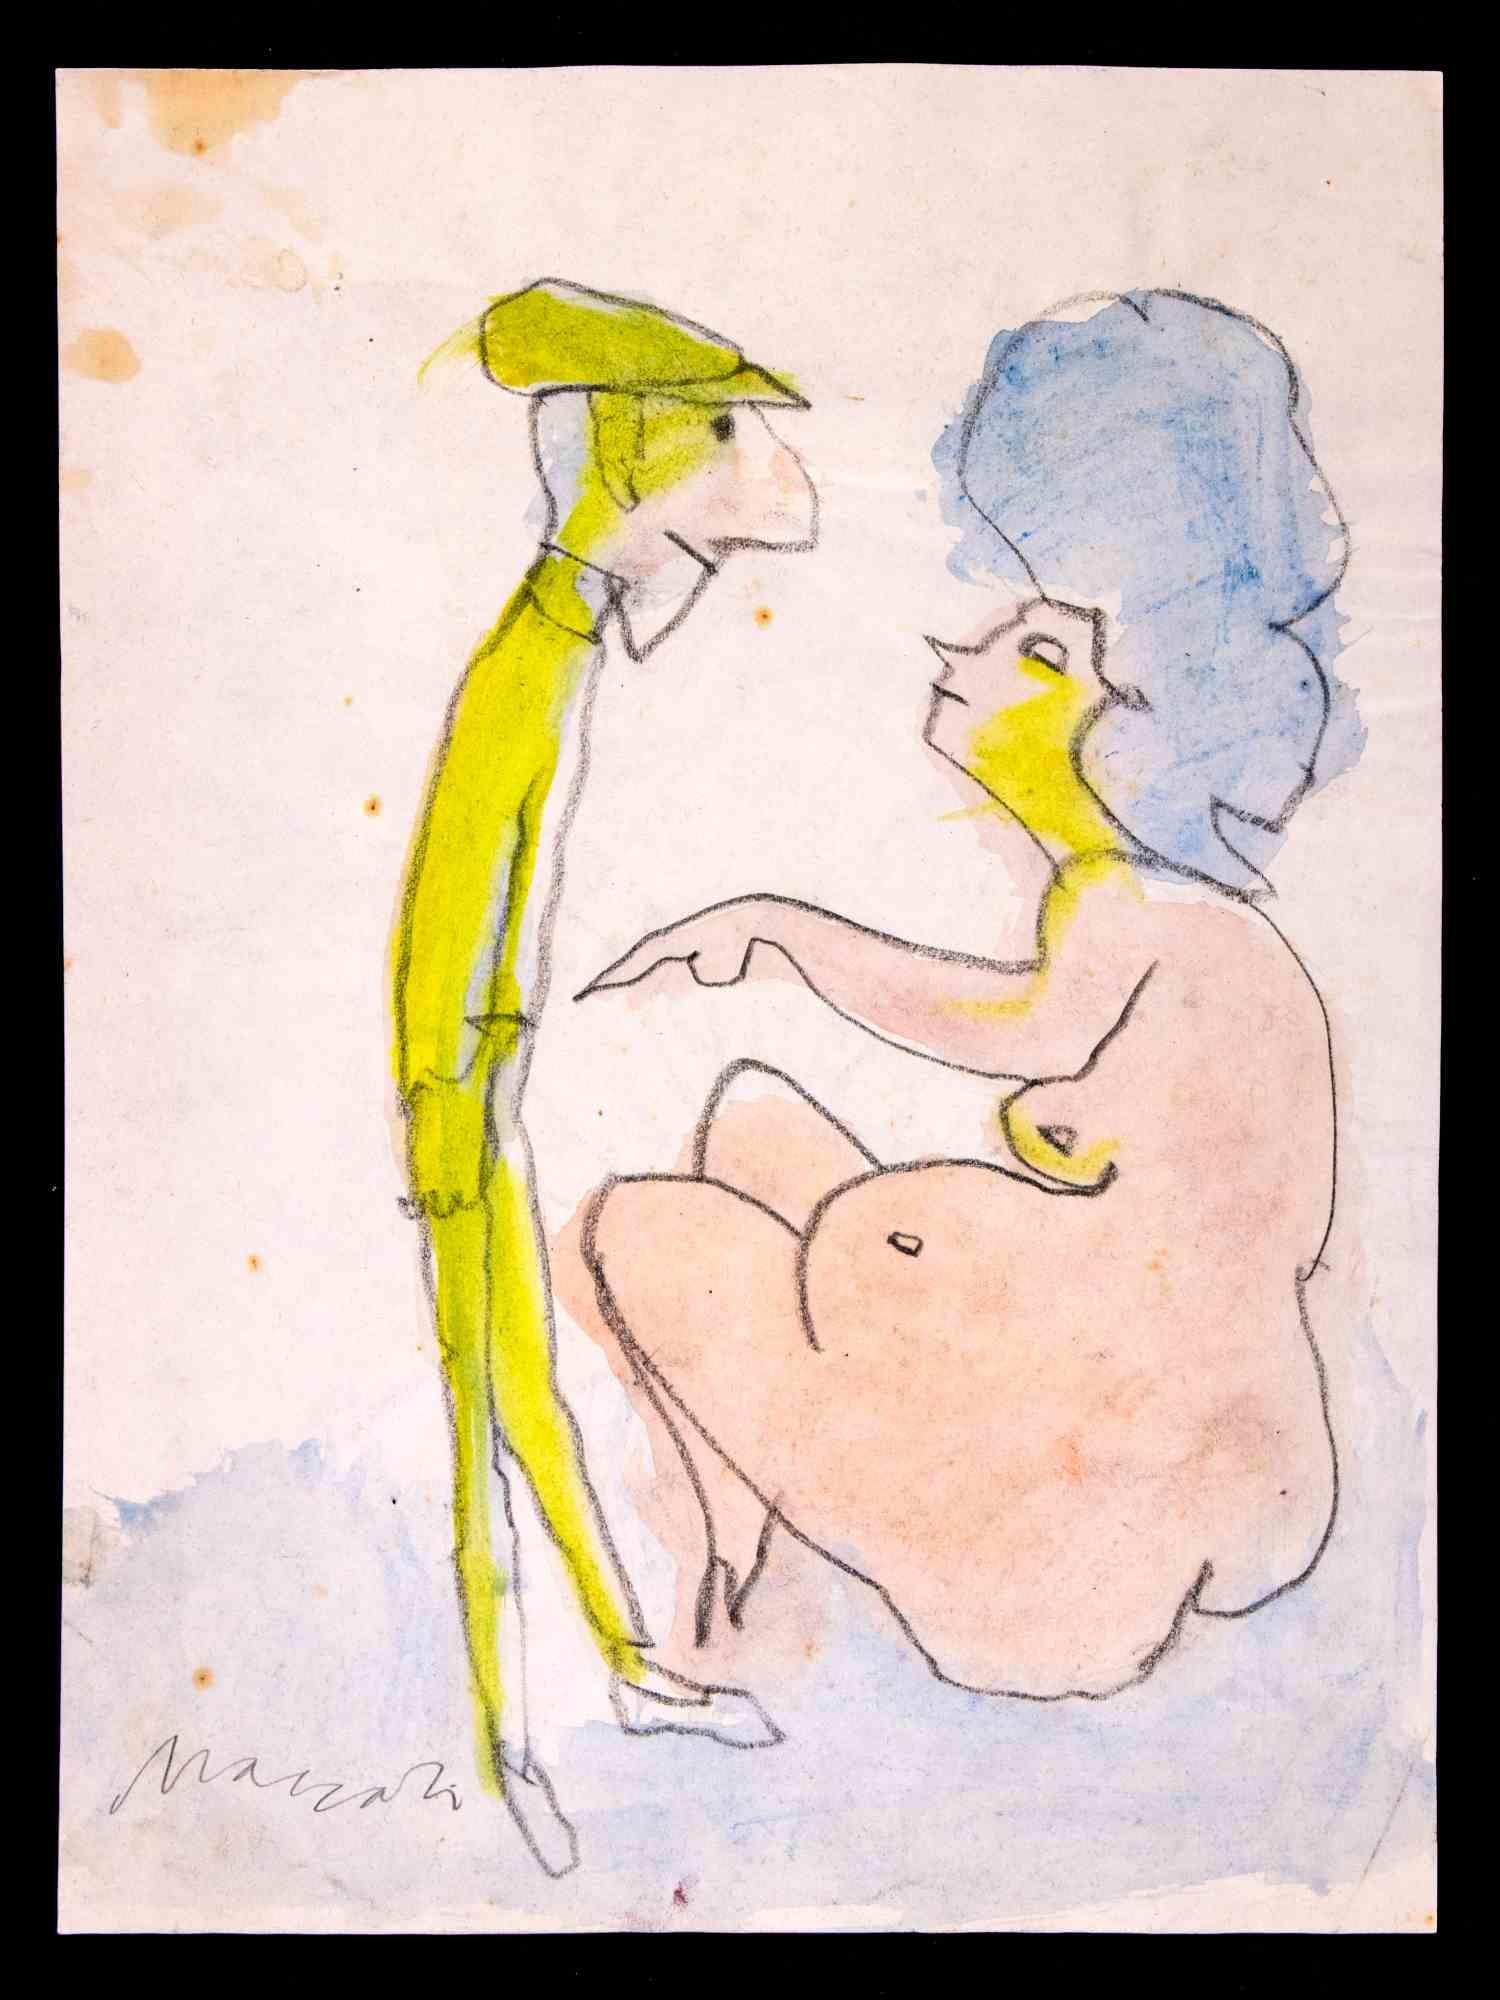 Le couple est un dessin au crayon, au pastel et à l'aquarelle réalisé par Mino Maccari (1924-1989) dans les années 1980.

Signé à la main dans la marge inférieure.

Bon état sur un papier blanc.

Mino Maccari (Sienne, 1924-Rome, 16 juin 1989) est un